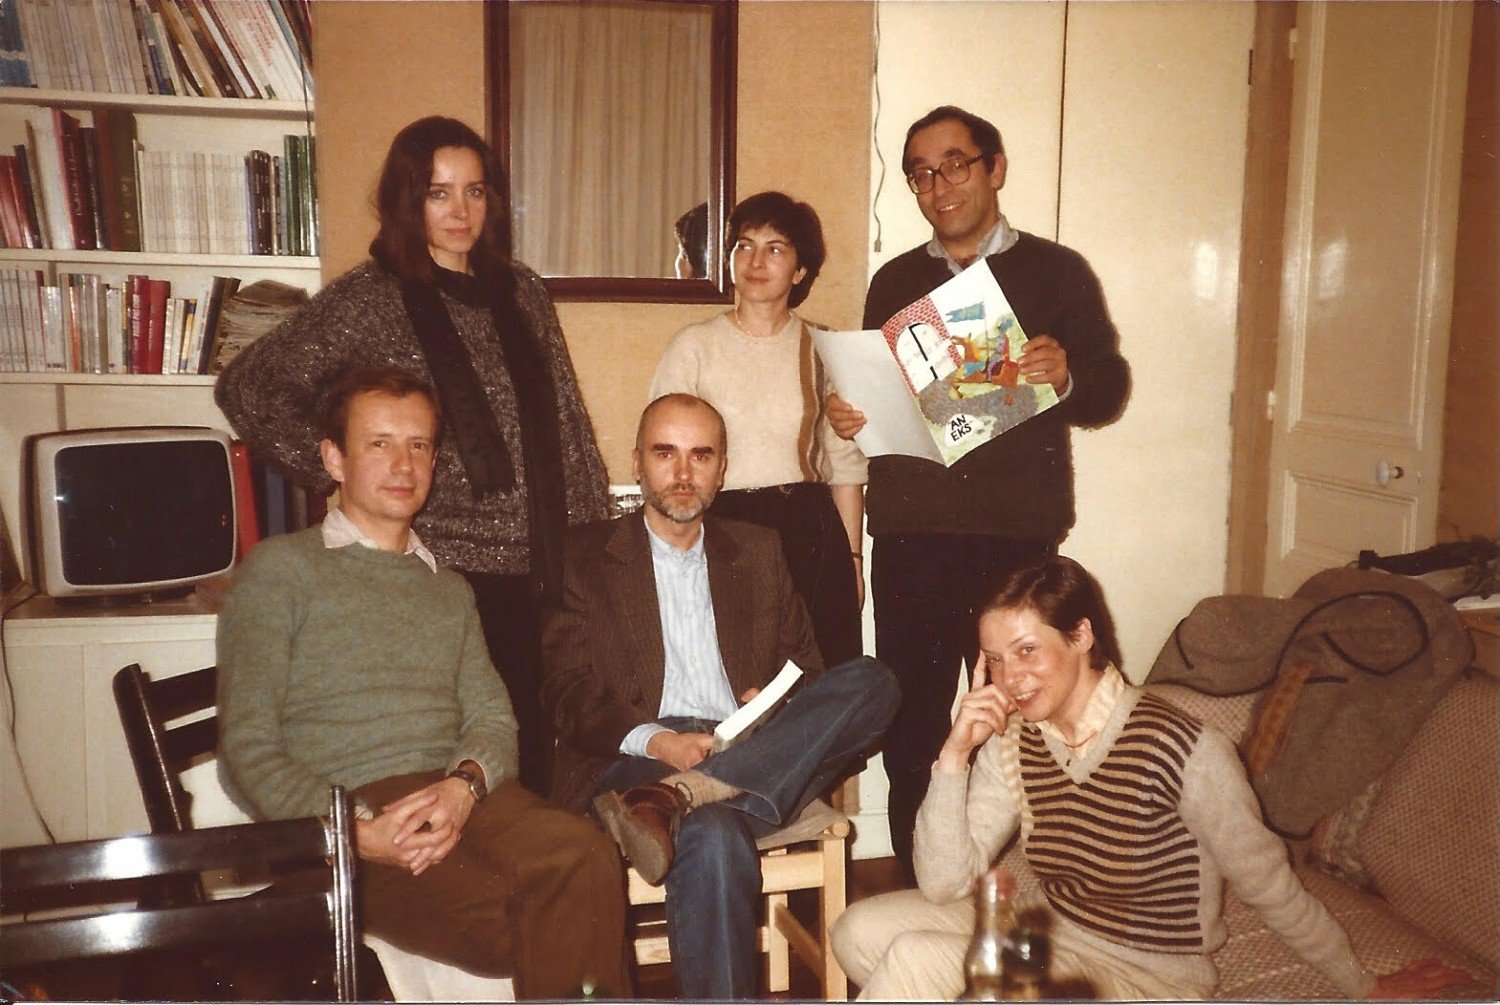 Wojciech Karpiński, Maja i Adam Zagajewscy, Irena i Aleksander Smolarowie, Barbara Toruńczyk, Paryż, lata 80.